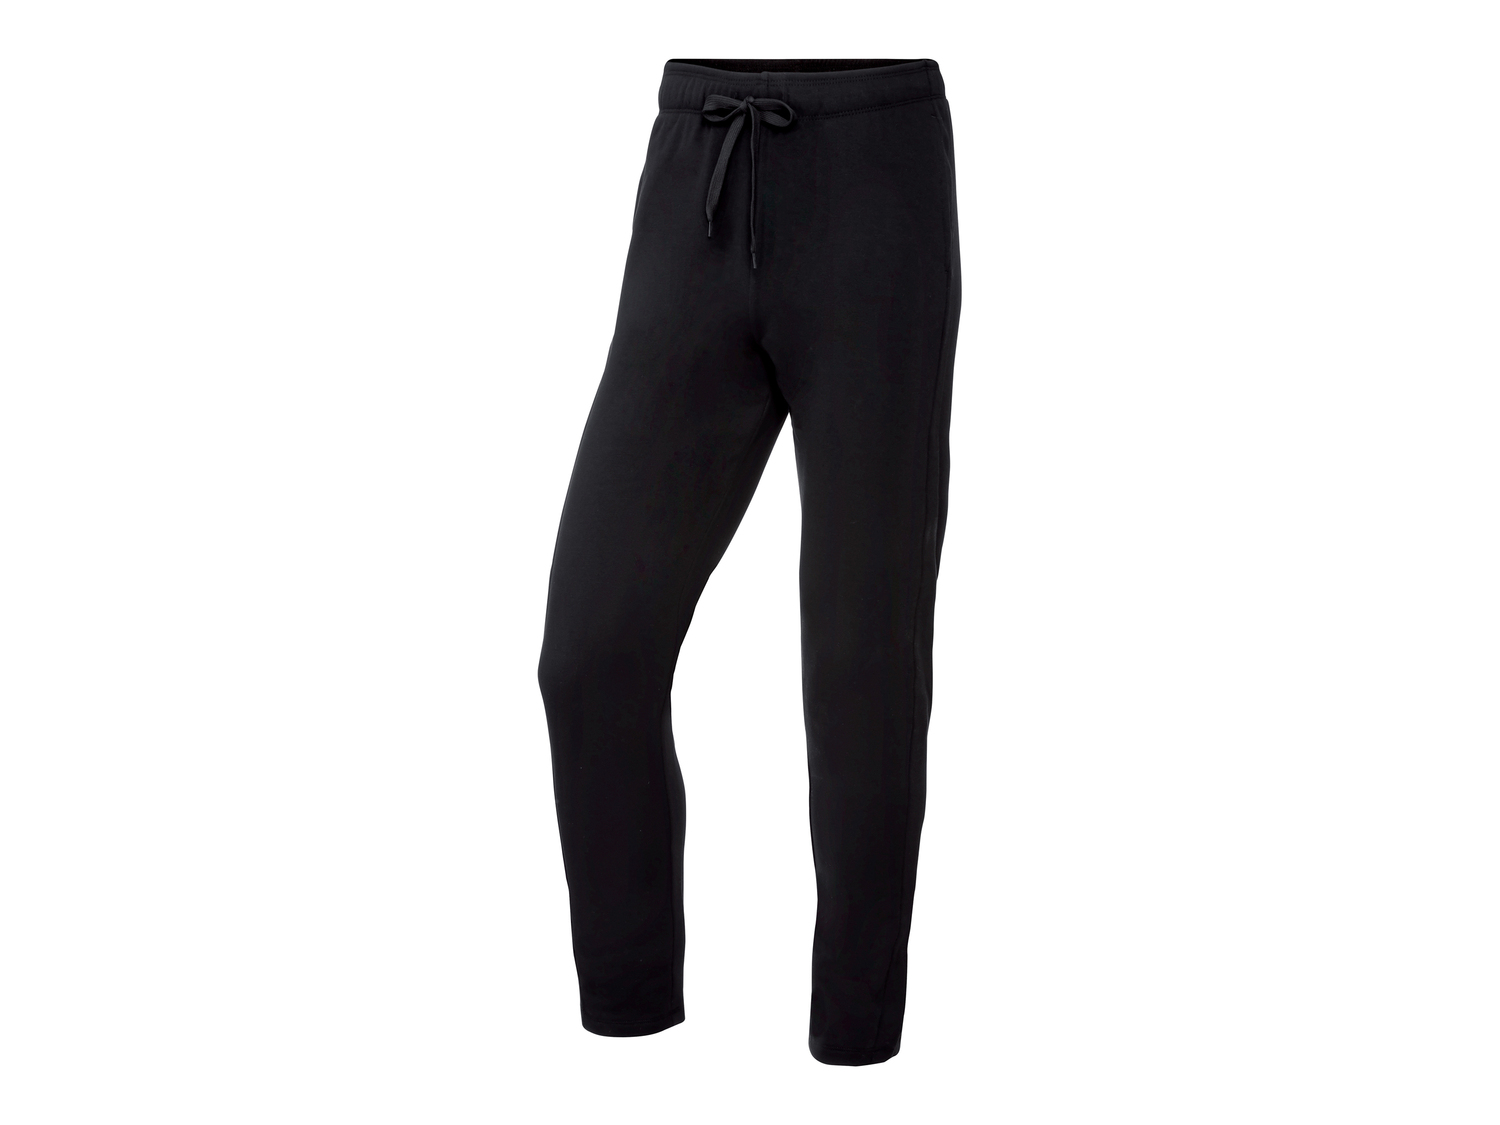 Pantaloni sportivi da uomo Crivit, prezzo 6.99 &#8364; 
Misure: S-XL
Taglie ...